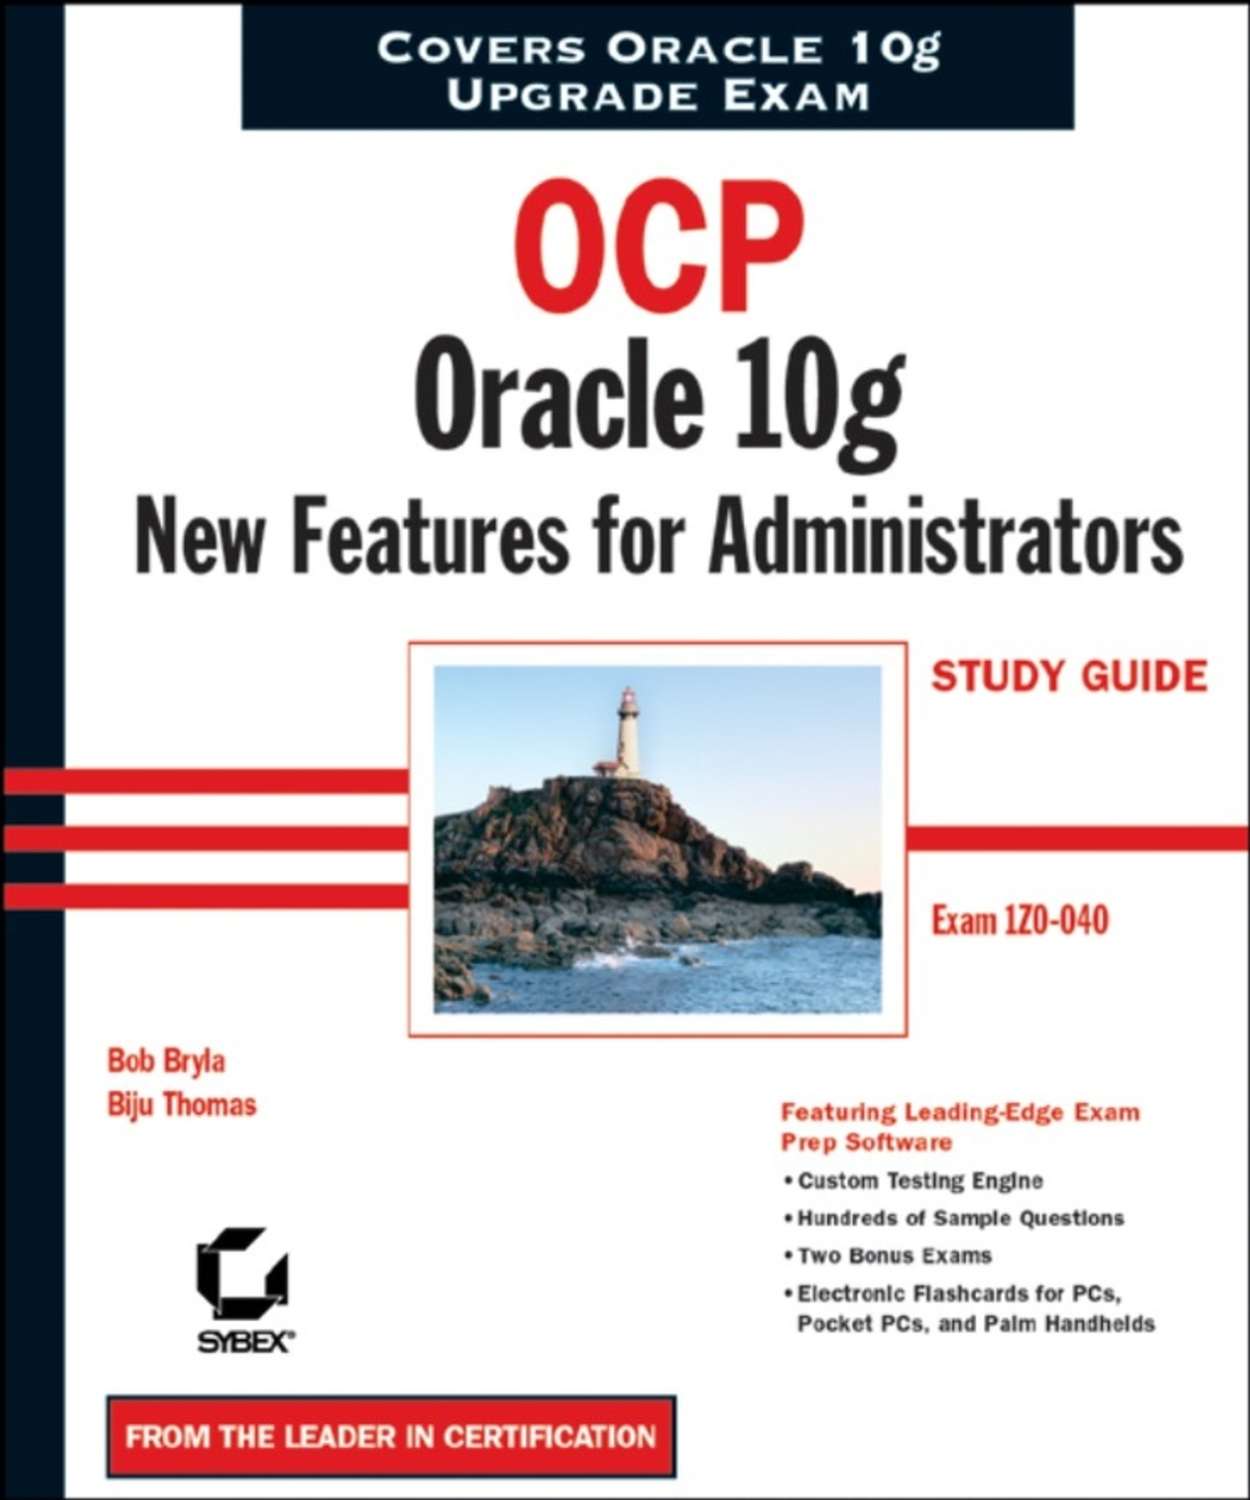 Книга Oracle 10g Первое Знакомство Скачать Бесплатно